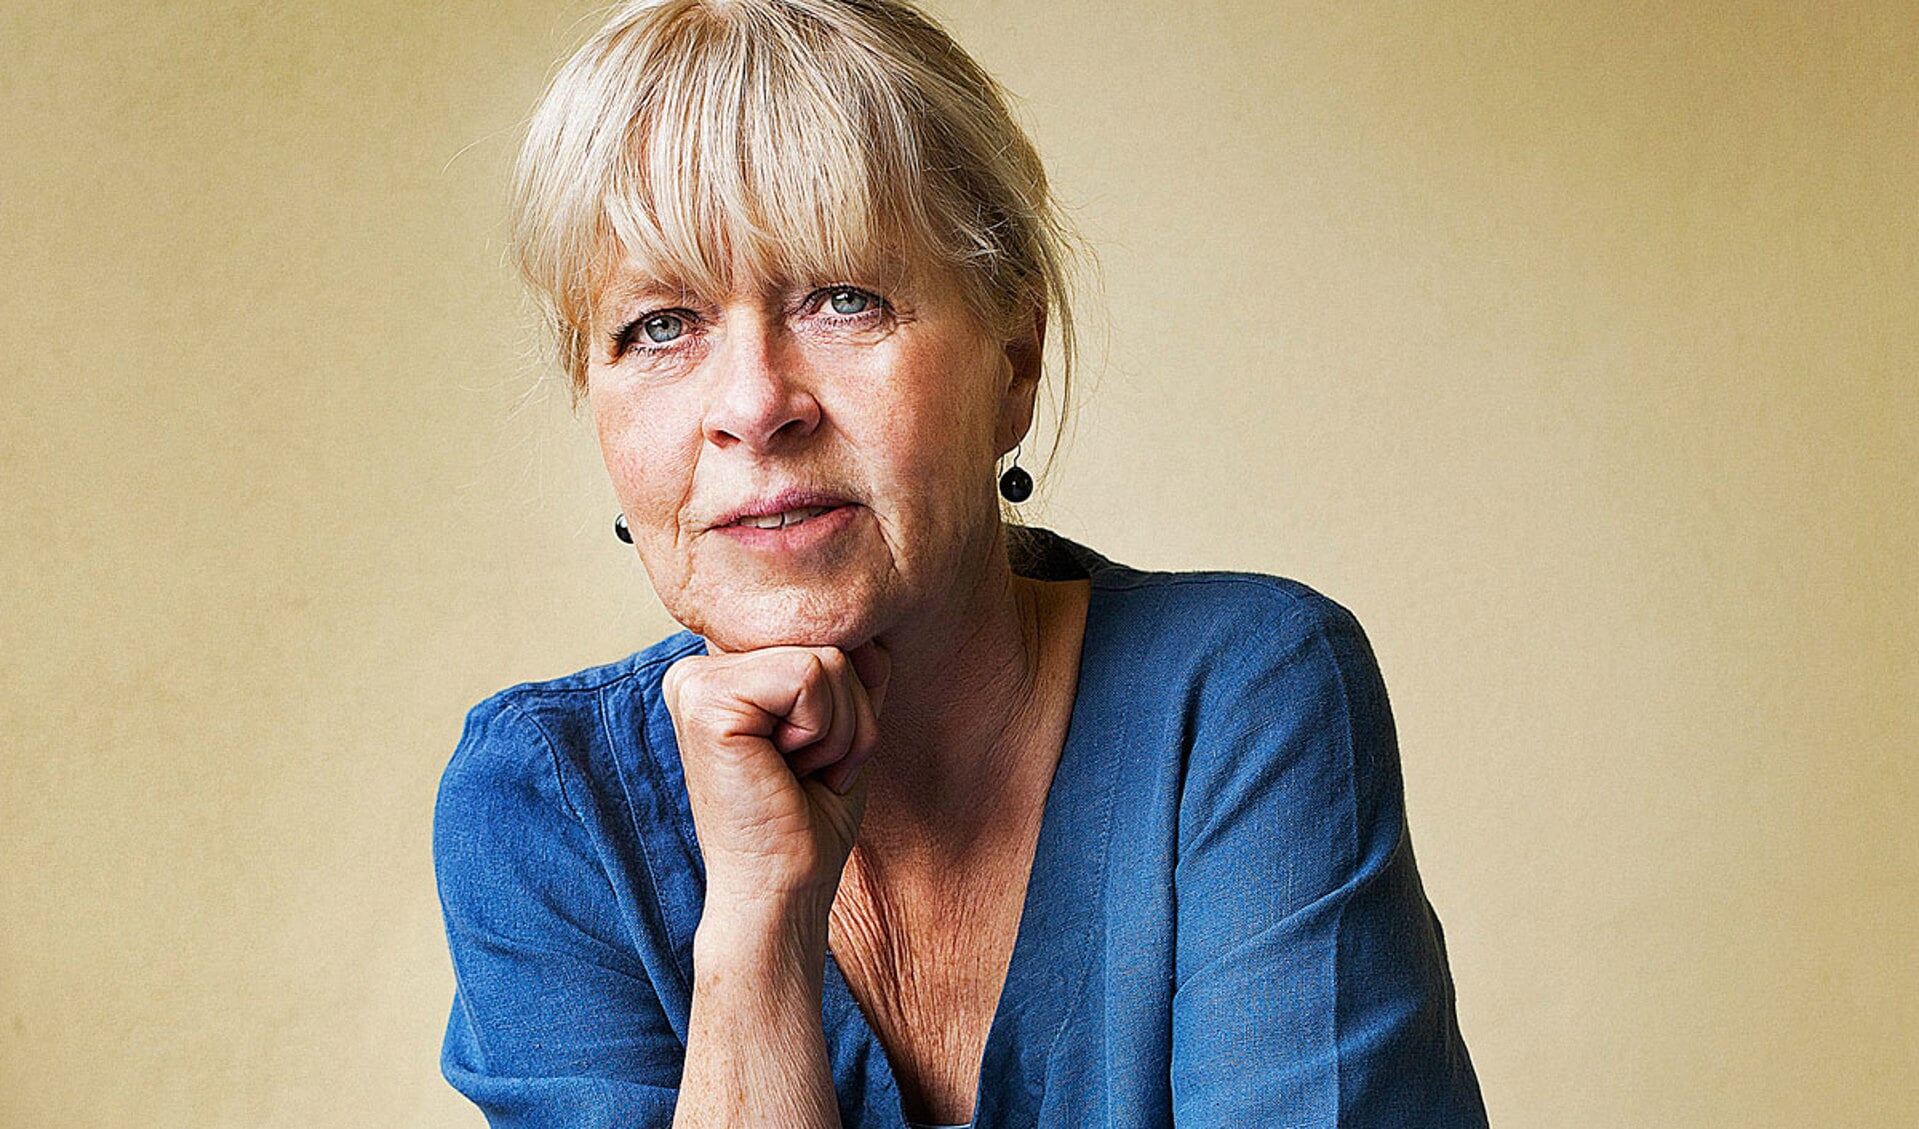 Annegreet van Bergen is een Nederlands journaliste en schrijfster, bekend van haar boek 'Gouden jaren'.